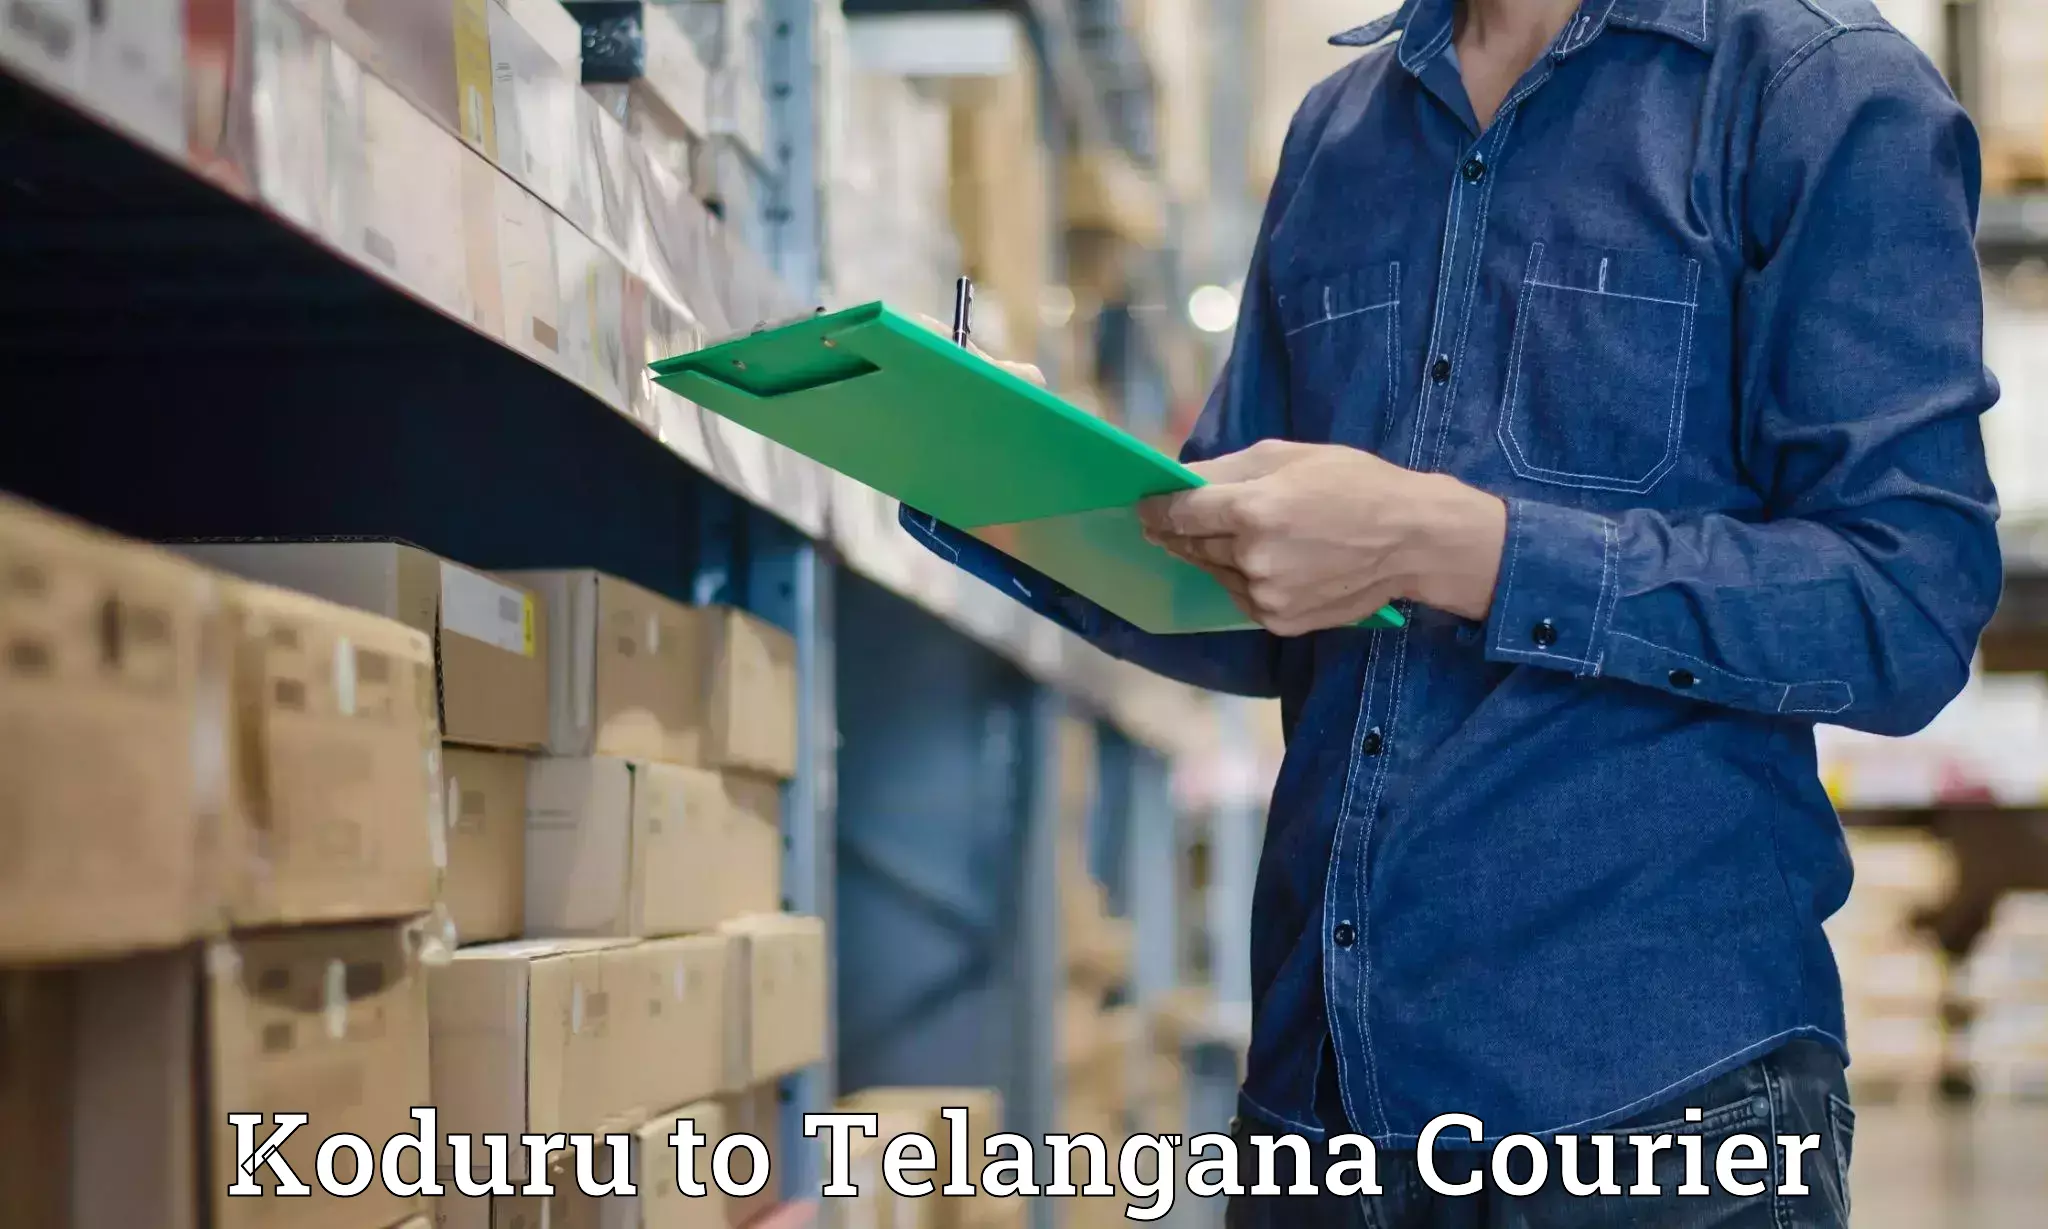 Large package courier Koduru to Telangana